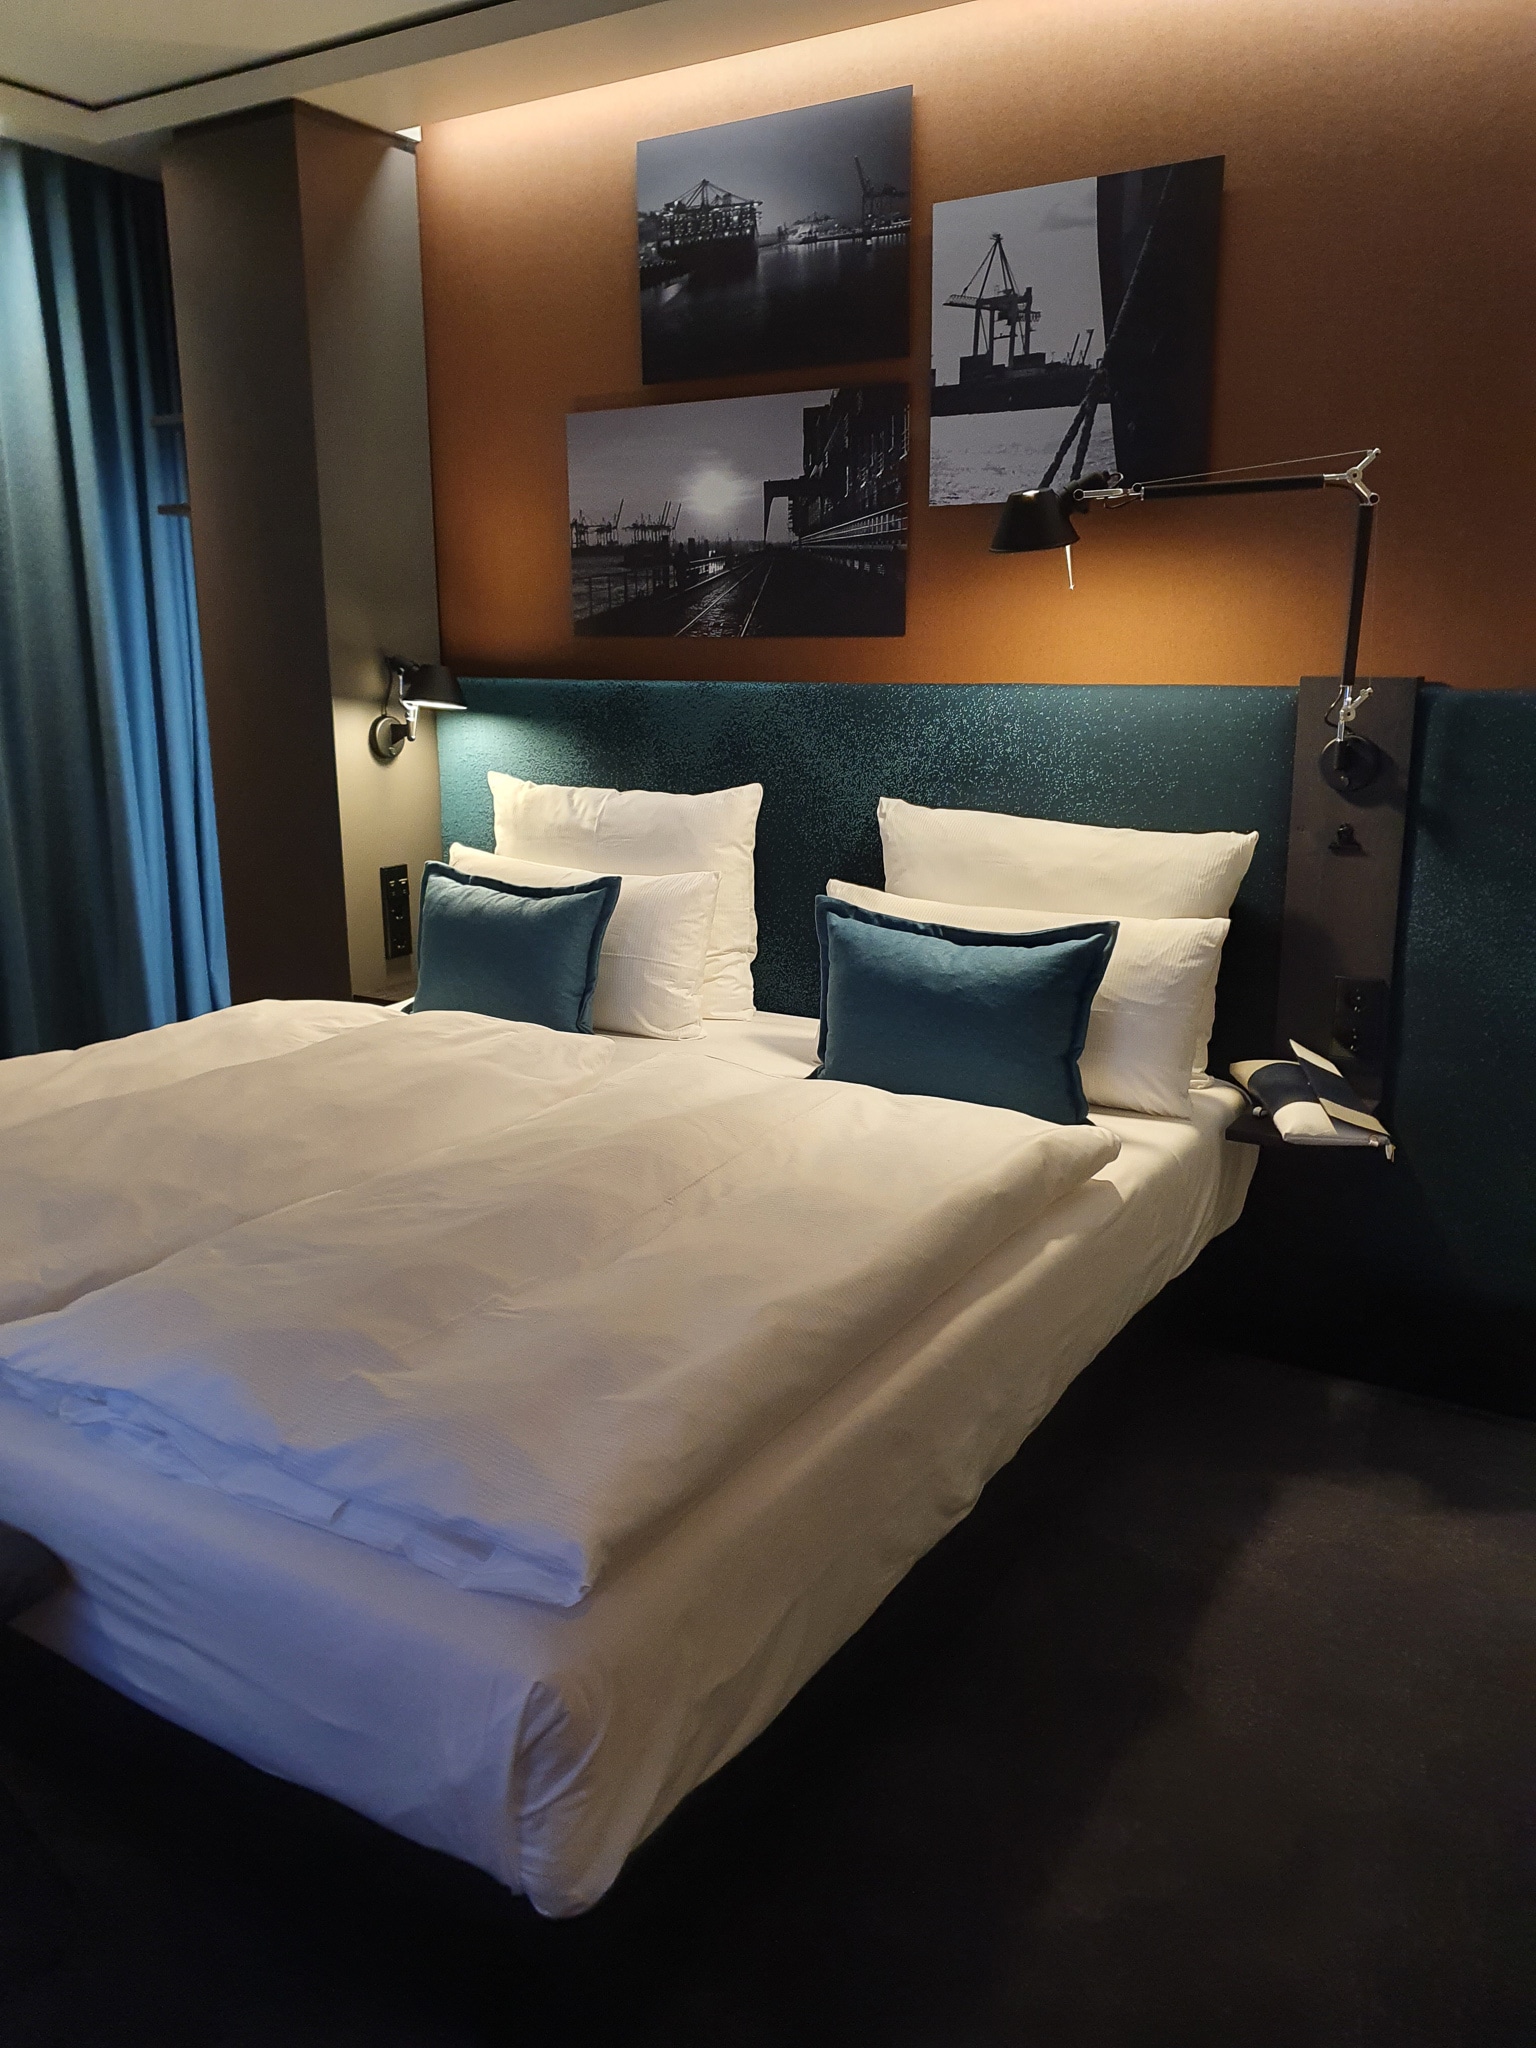 Motel One Hamburg Hotelzimmer. Doppelbett mit blaue Kissen. An der Wand schwarz-weißbilder von hamburg